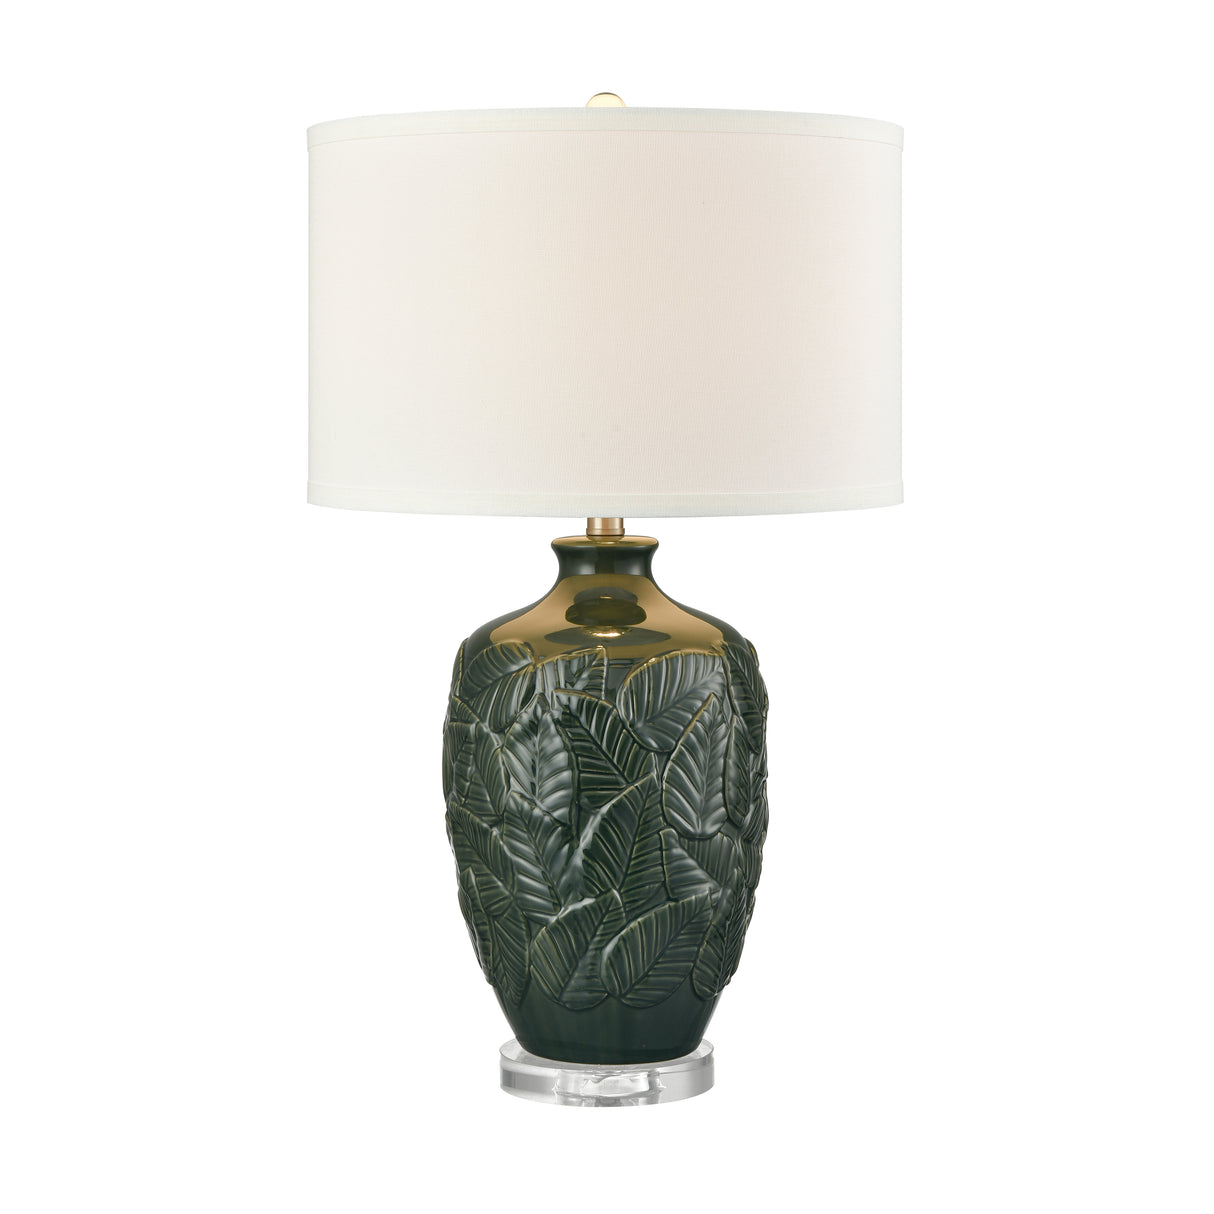 Elk S0019-11148-LED Goodell 27.5'' High 1-Light Table Lamp - Green Glaze - Includes LED Bulb